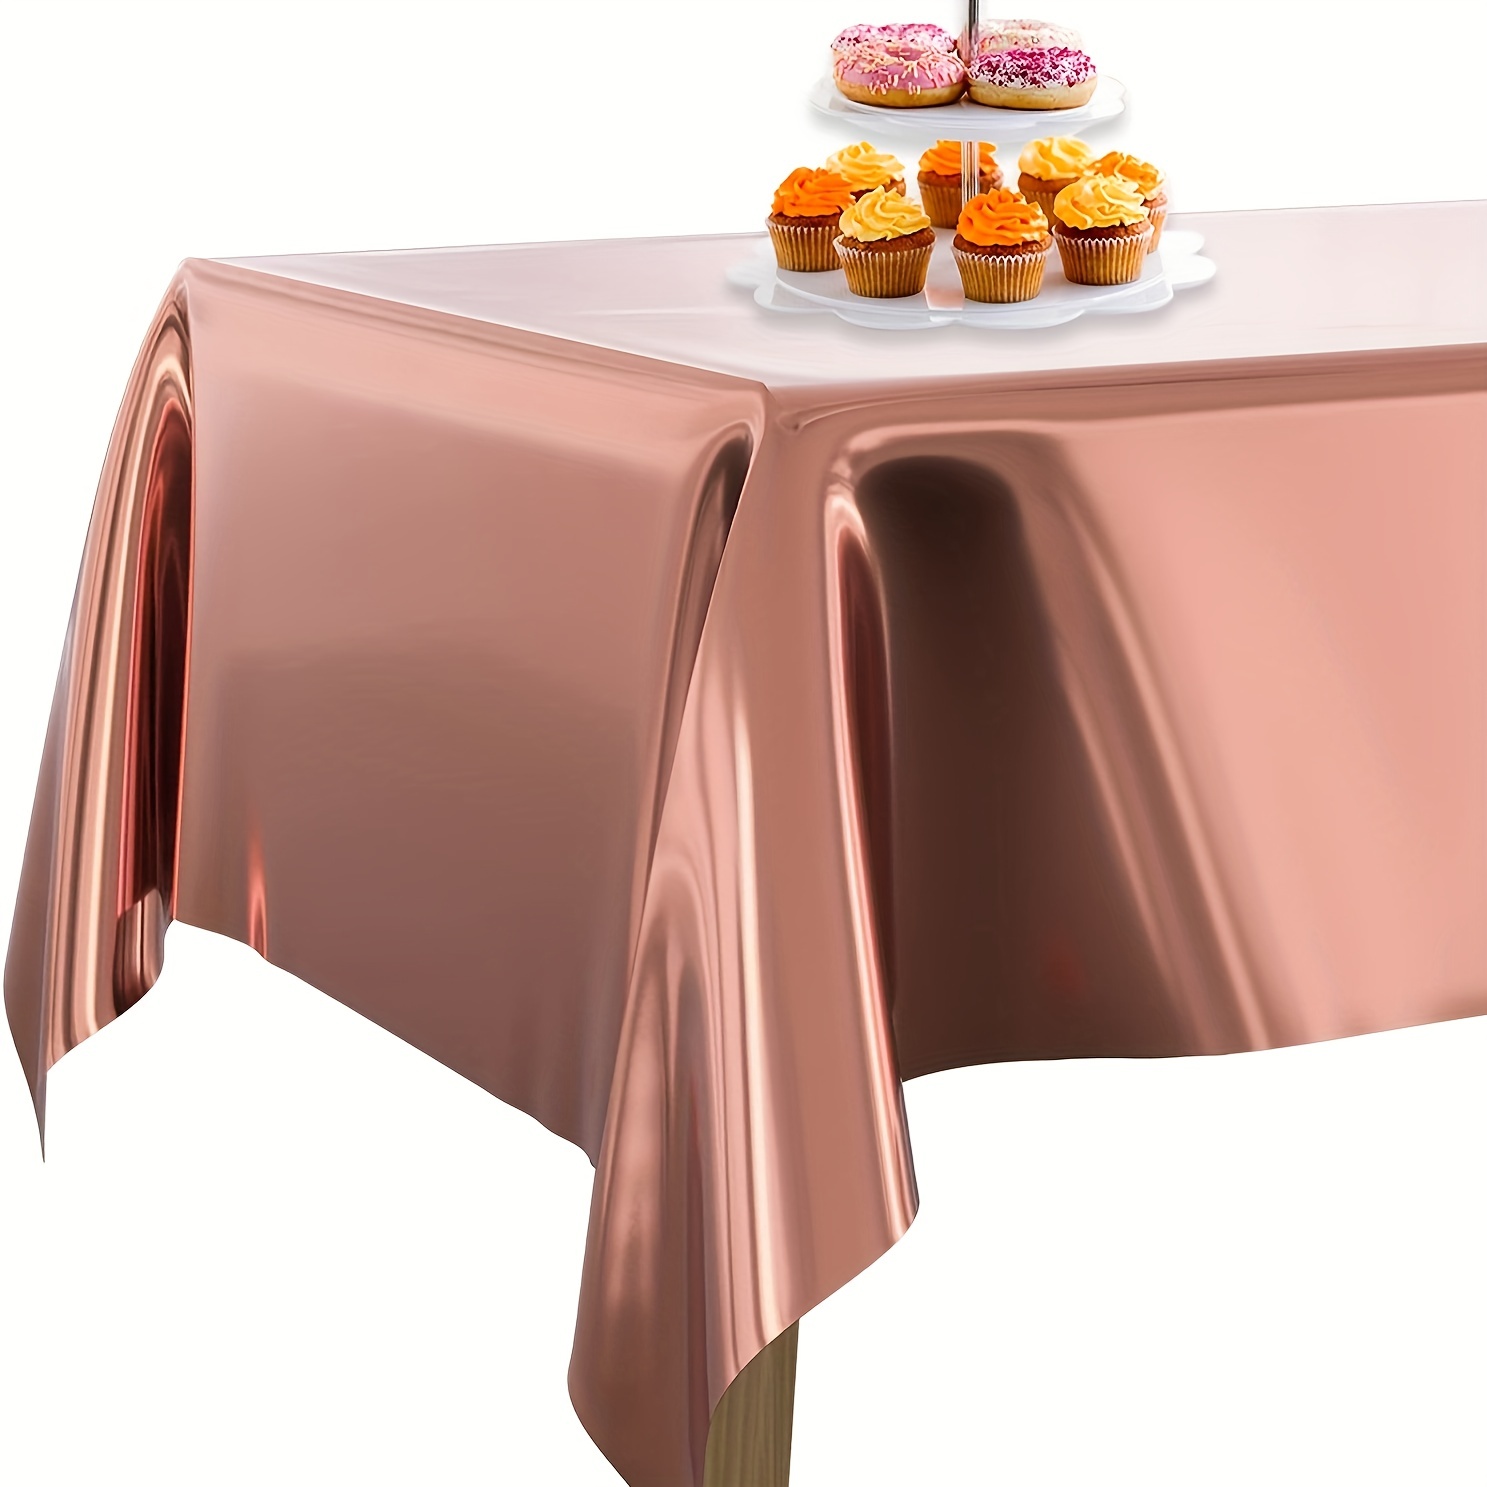  Mantel de cumpleaños – Mantel redondo de 34.9 in para  decoración de mesa, diseño de monstruos sonrientes con texto en inglés  Happy Birthday y delicioso pastel infantil reutilizable multicolor : Hogar